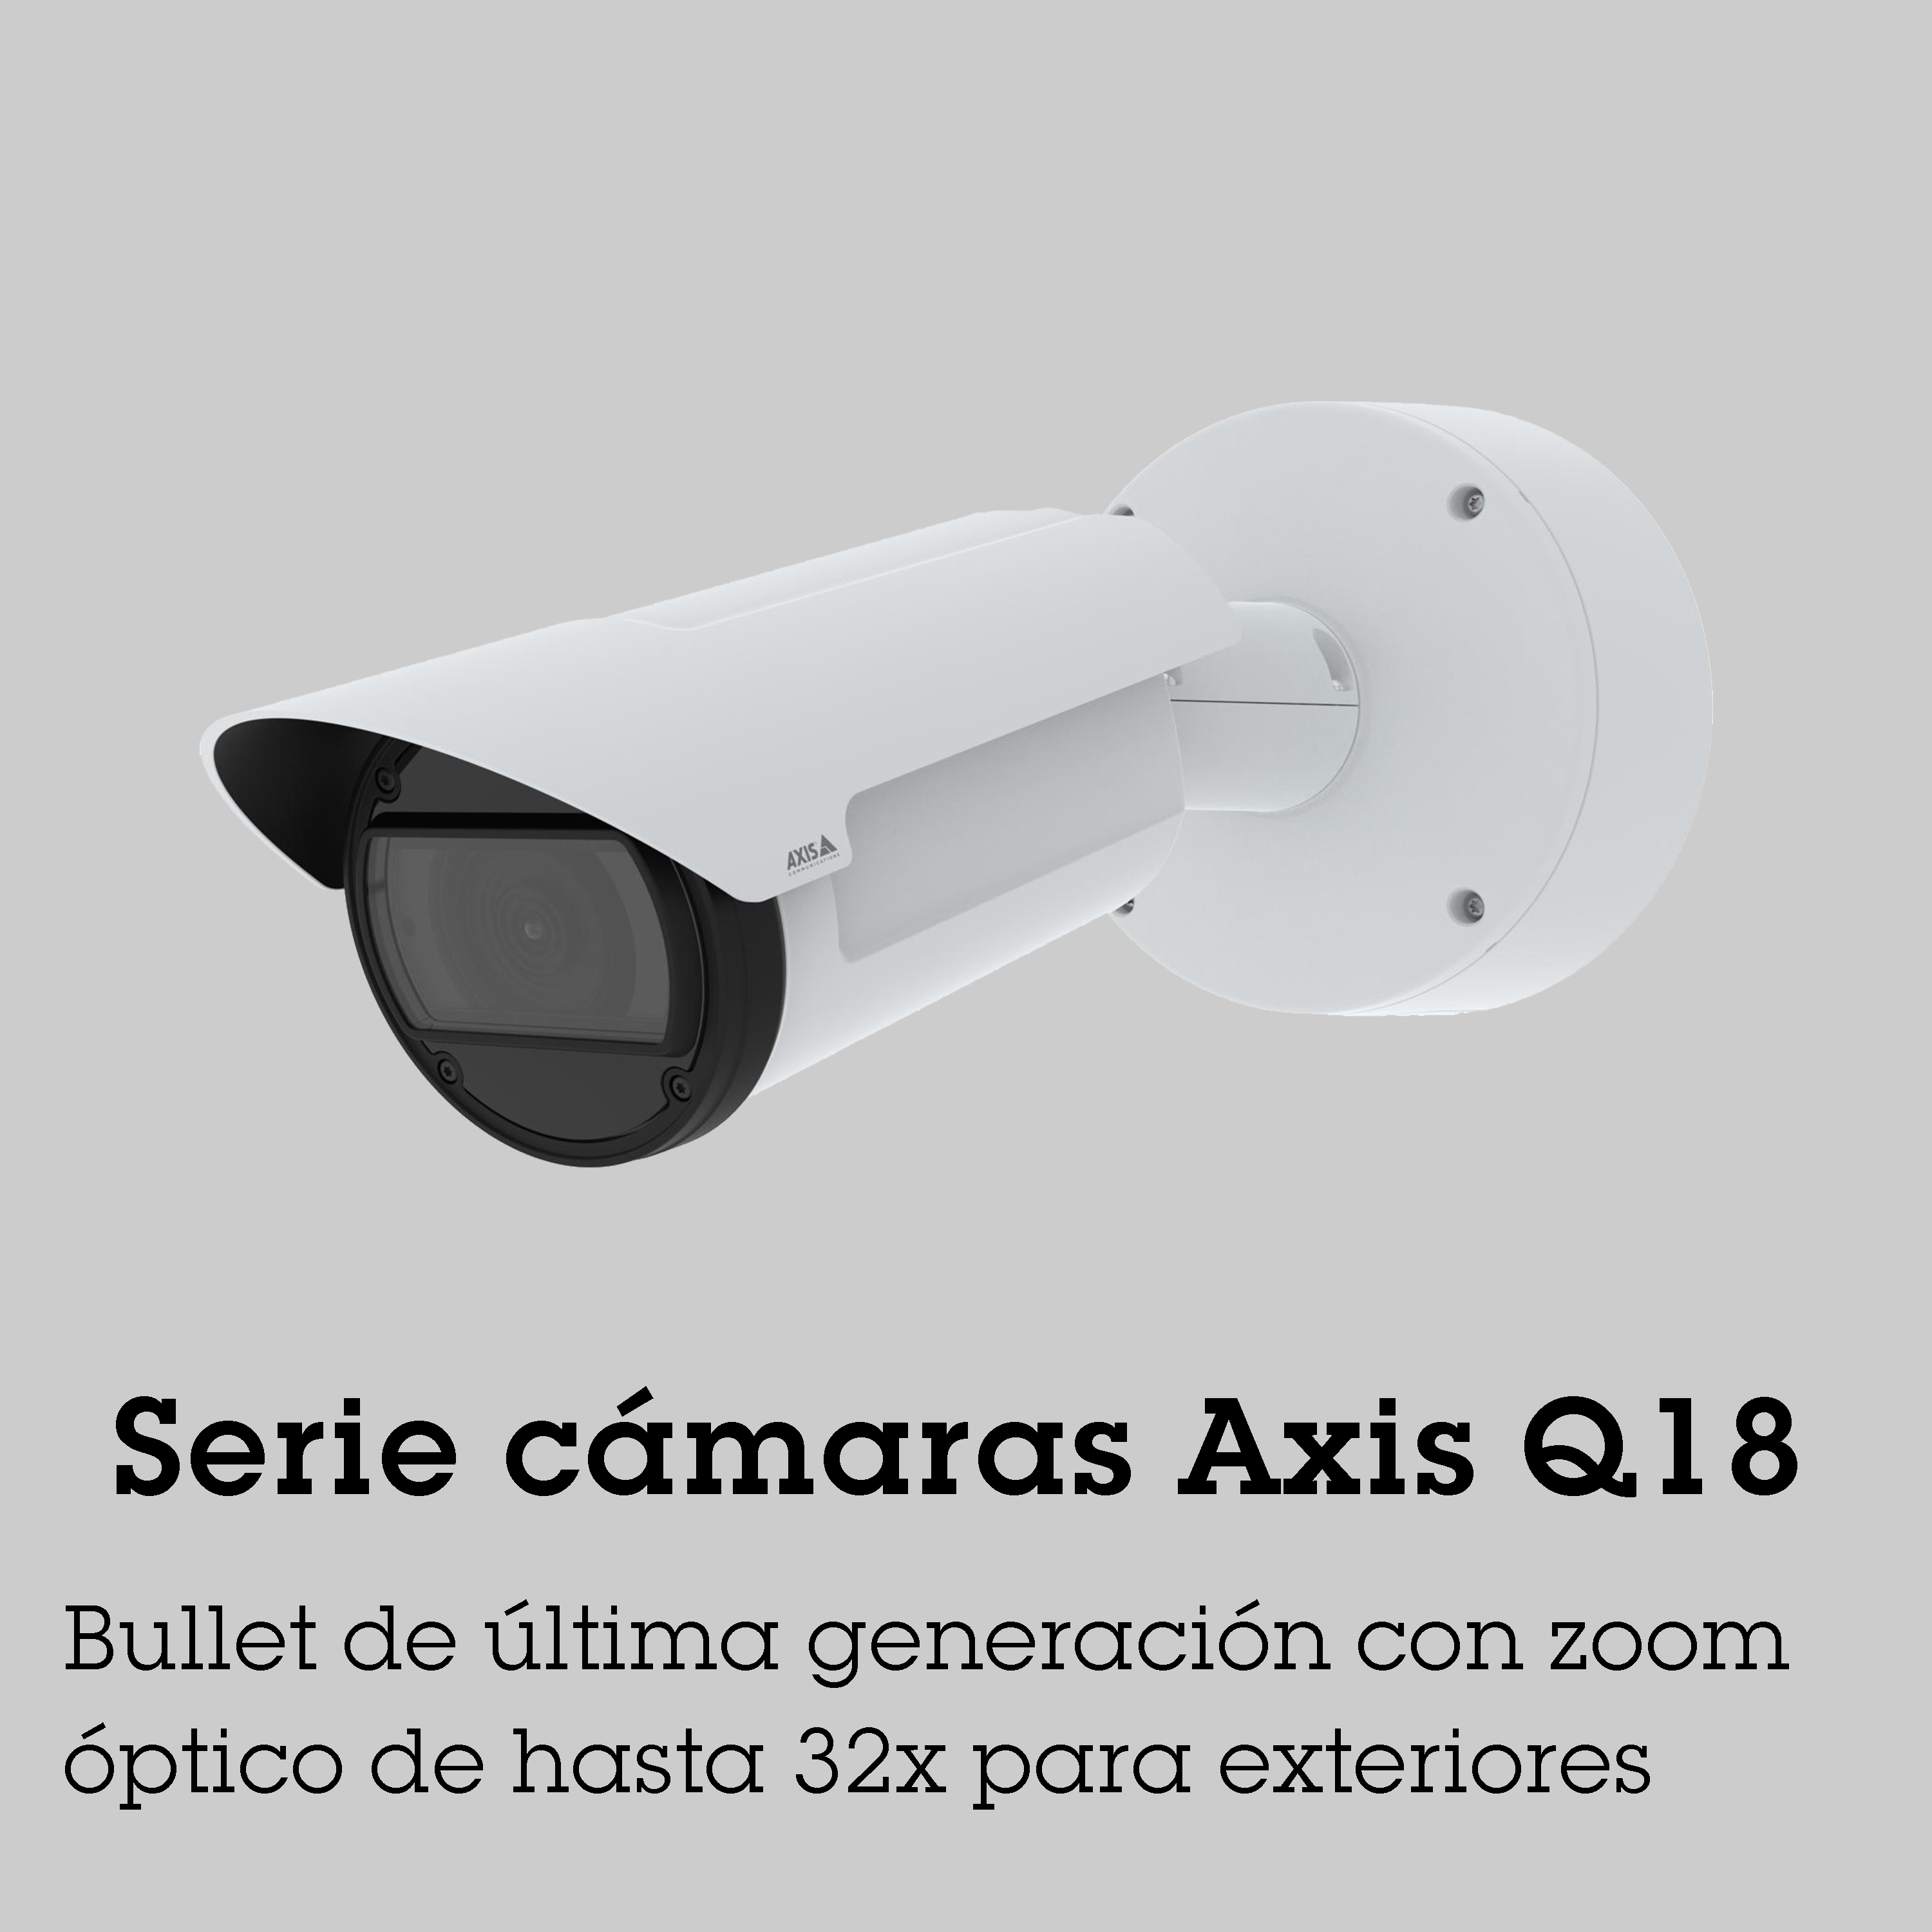 Serie cámaras Axis Q18